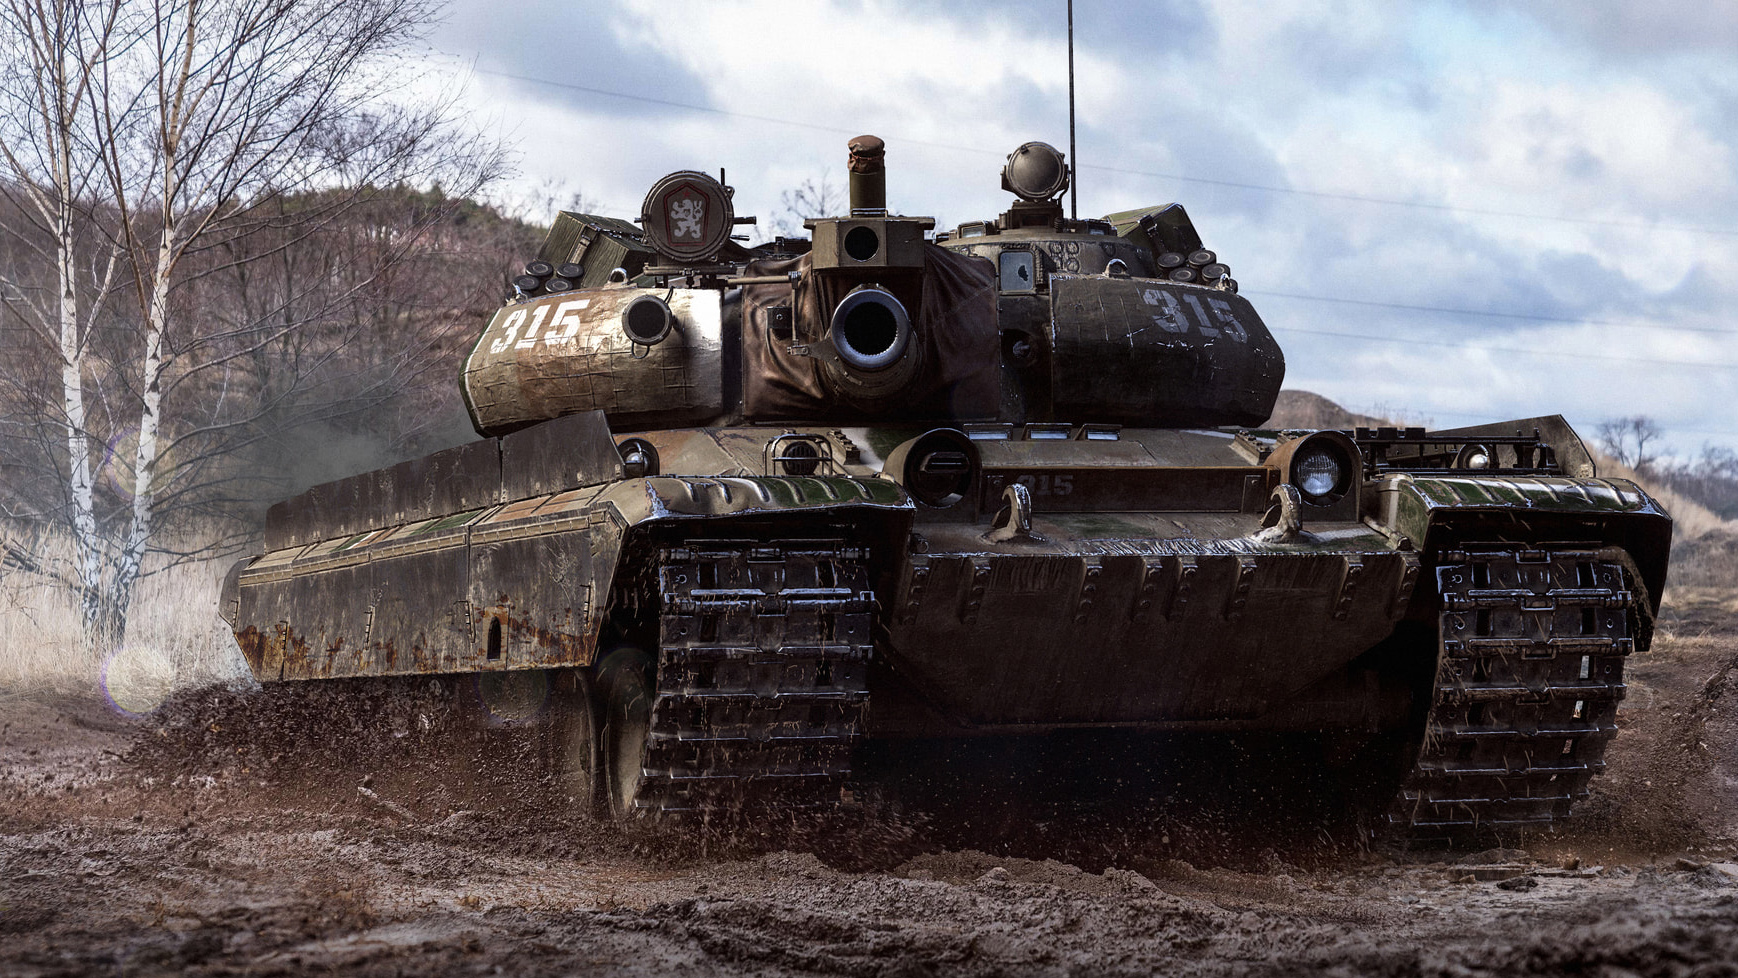 Vz 55 танк